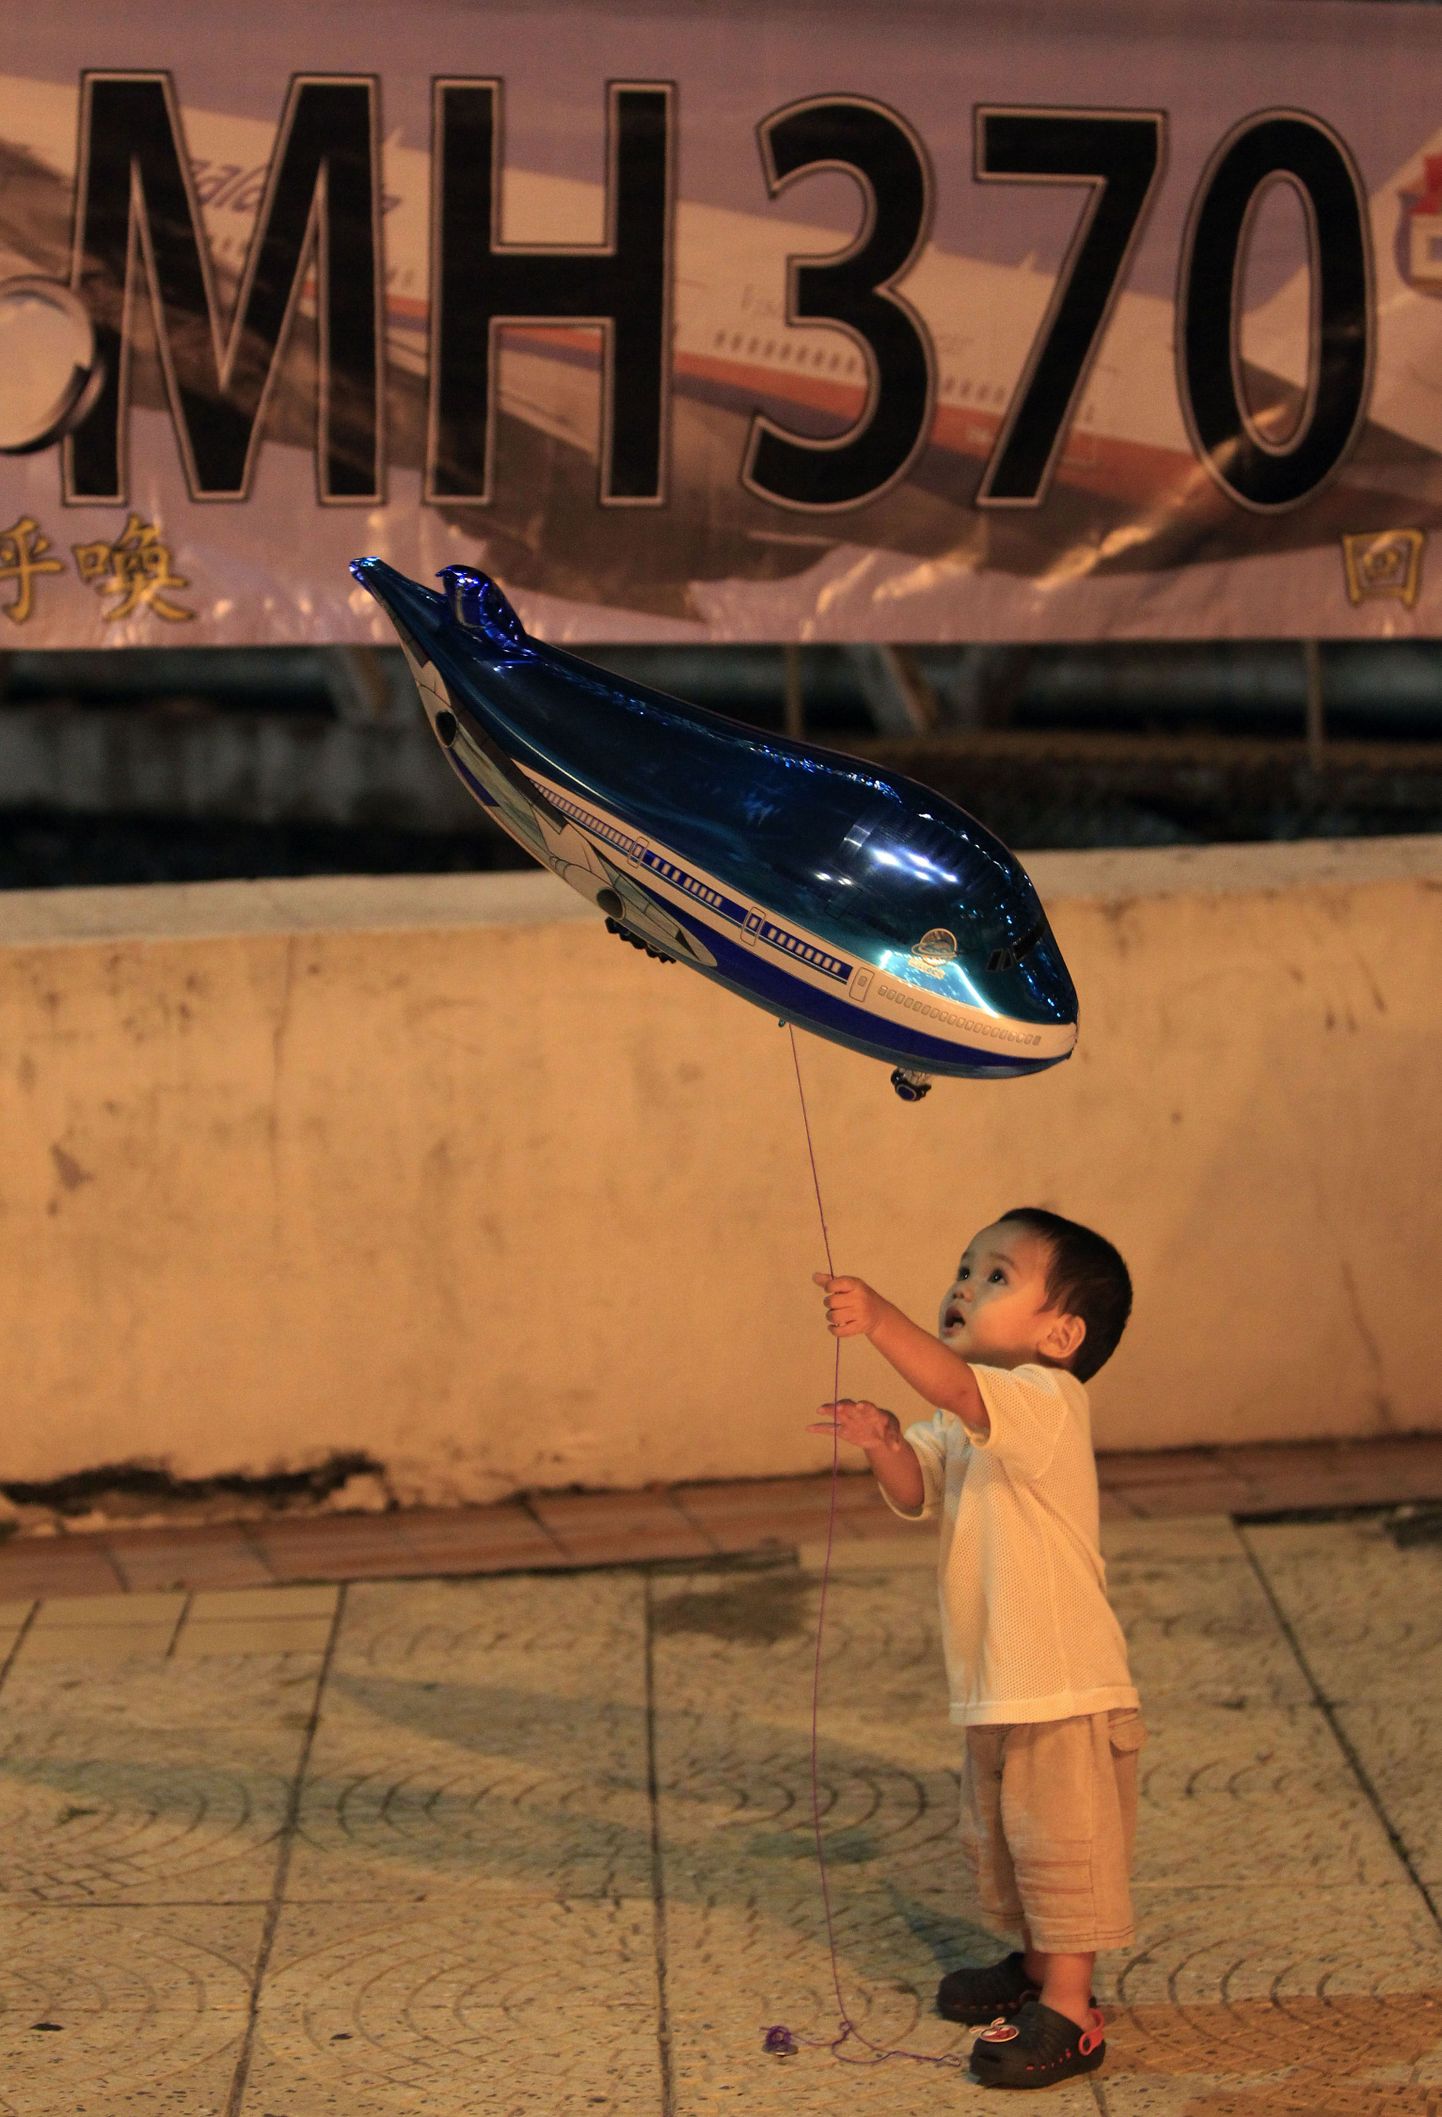 CNN:Malaisia kadunud lennuk võis meelega vältida Indoneesia õhuruumi. Pildil poiss mängimas lennu MH370 mälestusüritusel lennuki kujulise õhupalliga